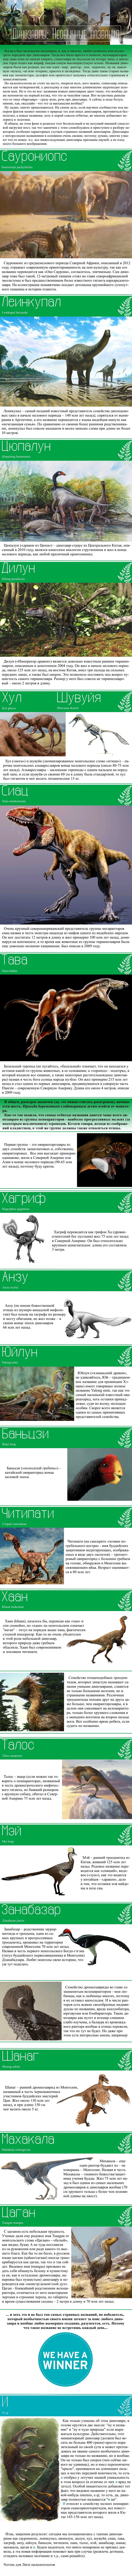 Виды Хищных Динозавров Фото С Названиями